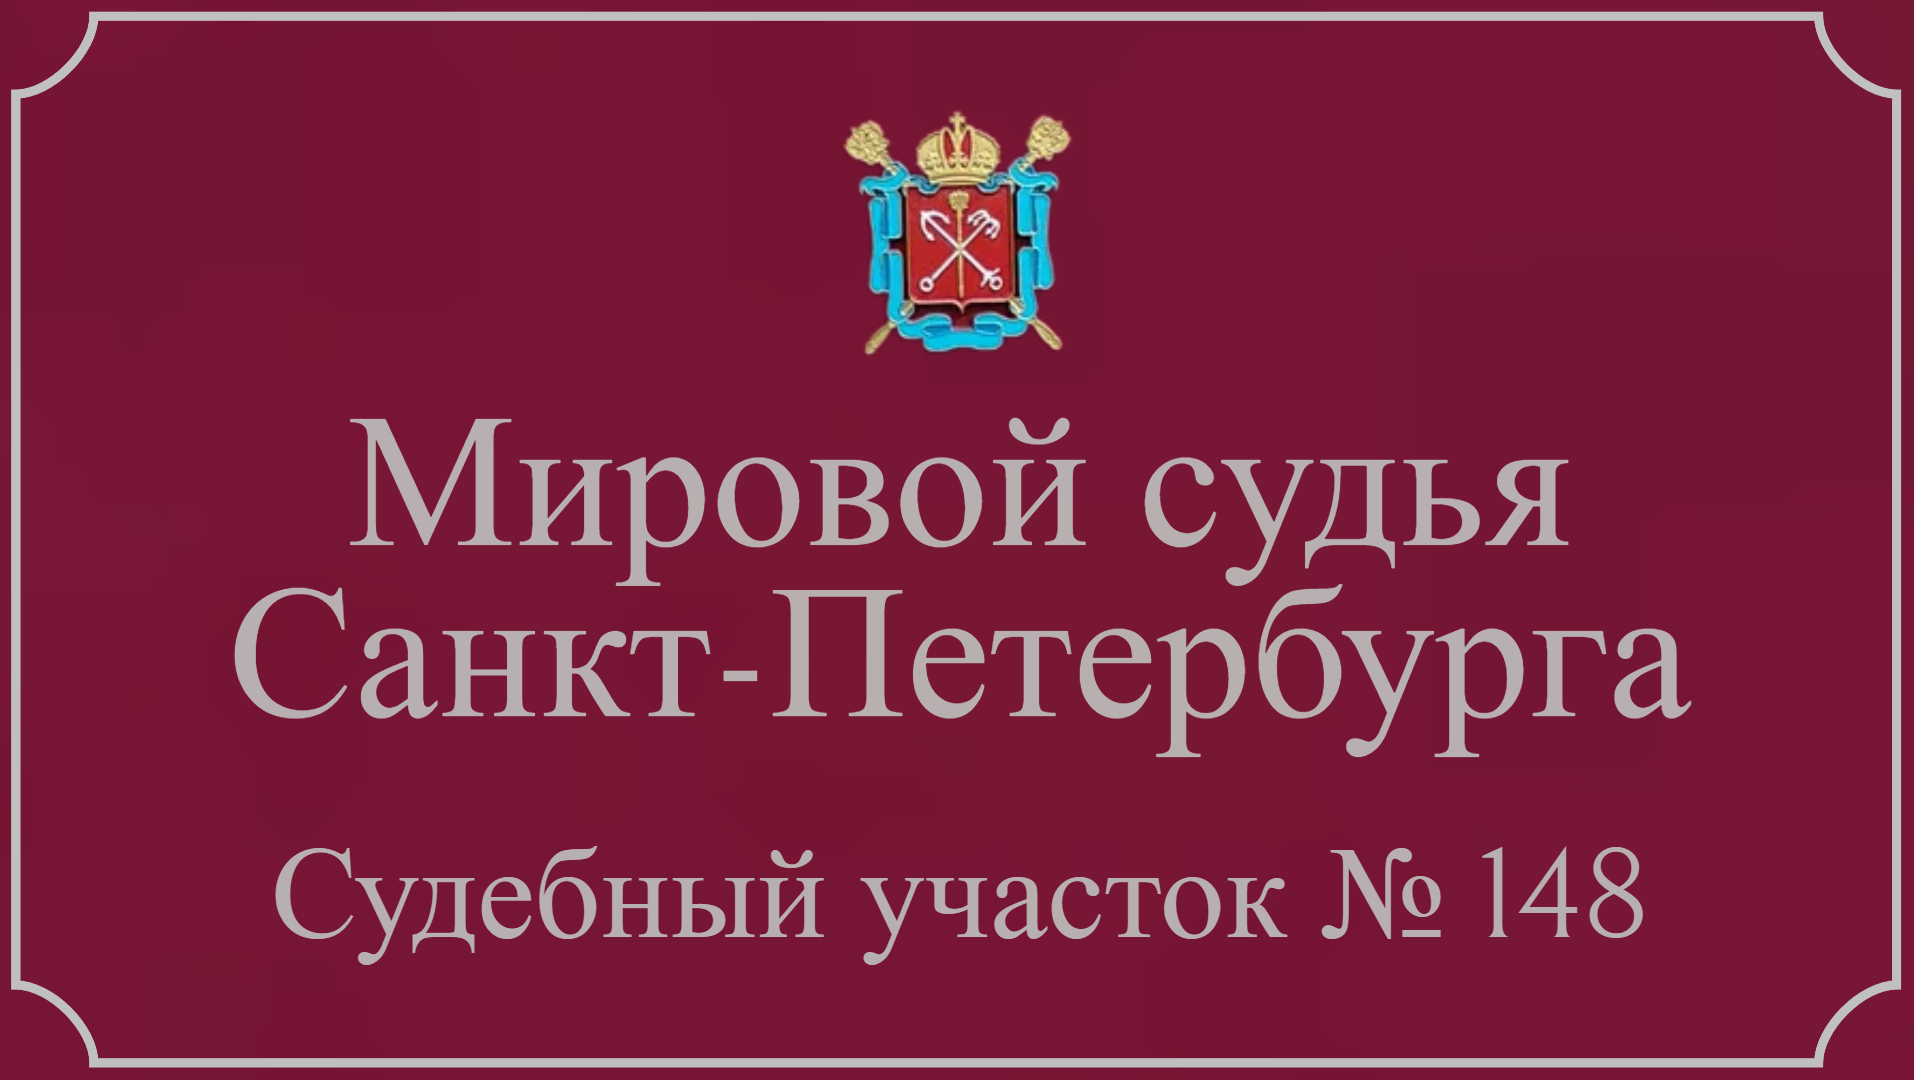 Информация по 148 судебному участку в Санкт-Петербурге.